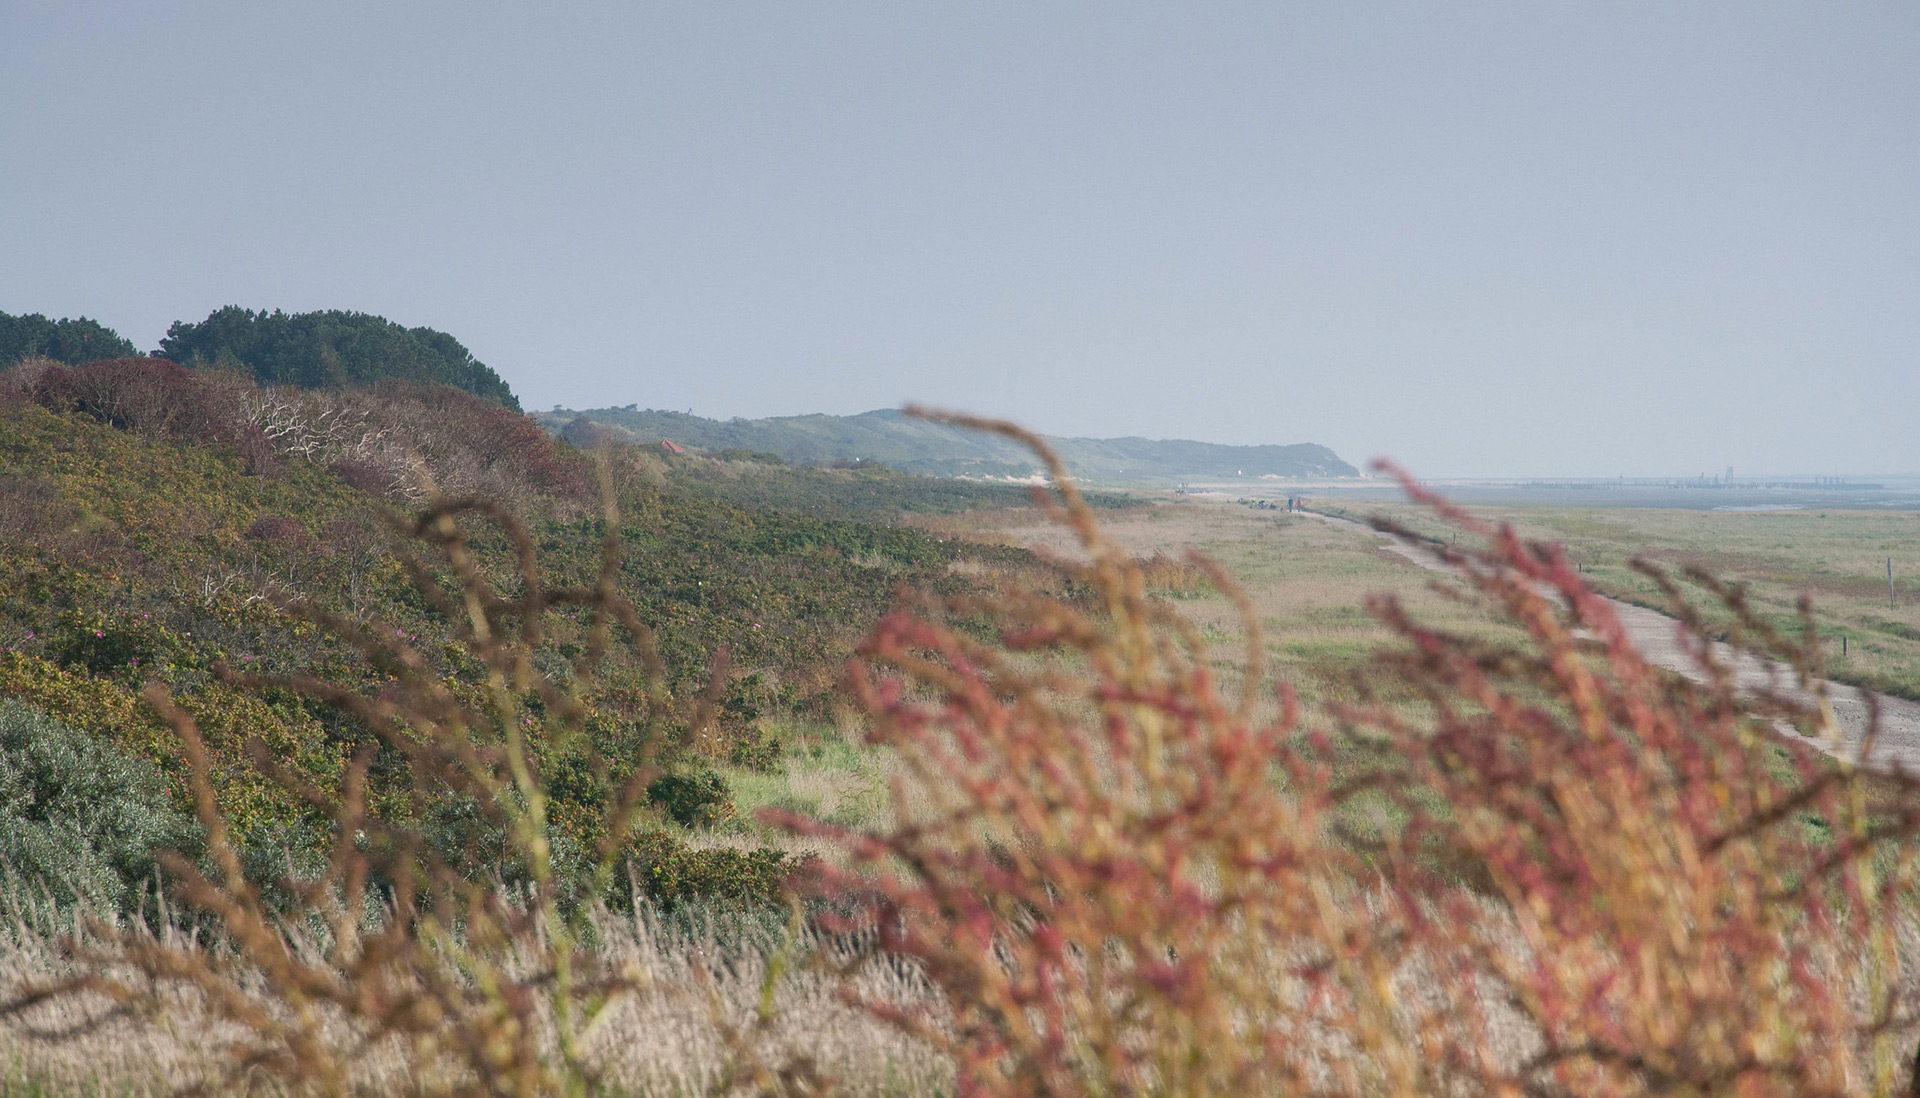 Blick über die verlassene, hügelige Landschaft von Wangerooge.